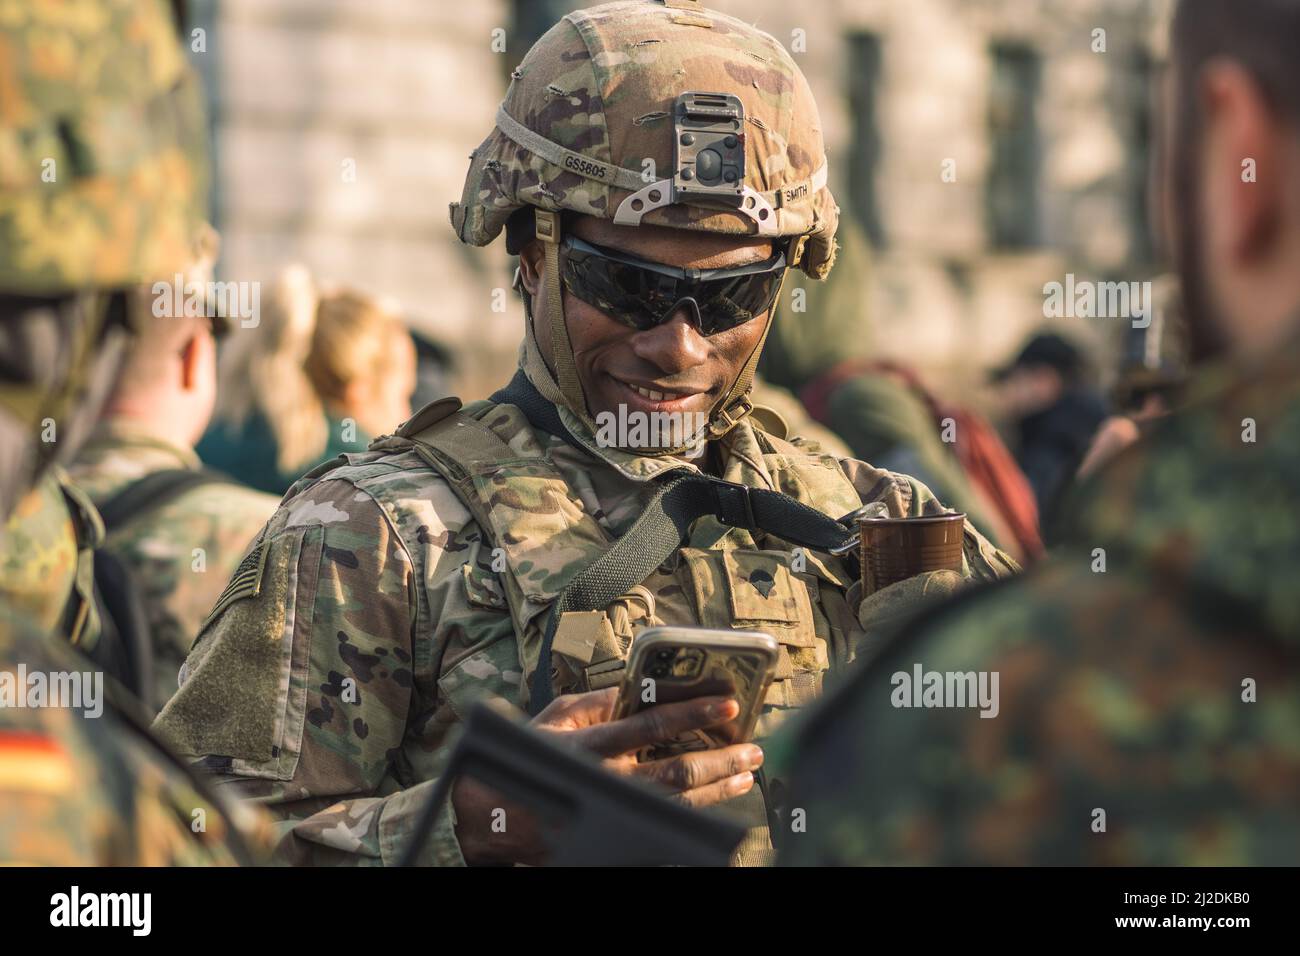 Soldat souriant du corps des Marines des États-Unis avec des lunettes de soleil, un fusil de chasse et un véhicule blindé humvee en arrière-plan pendant la guerre, les troupes des États-Unis ou de l'armée américaine Banque D'Images